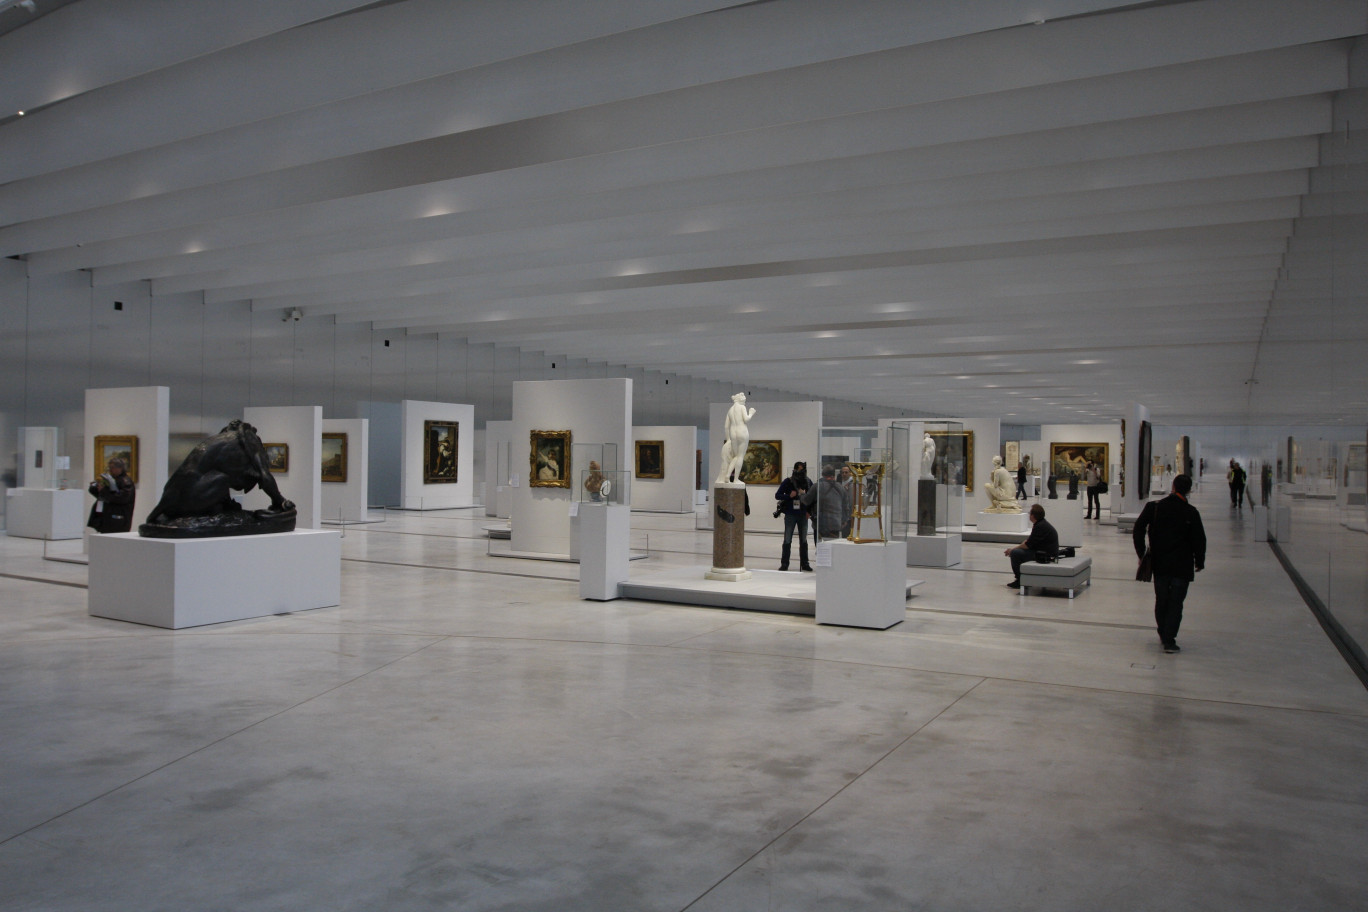 La Galerie du temps propose une muséographie inédite, avec une présentation des œuvres chronologiques et non pas en fonction des courants artistiques.